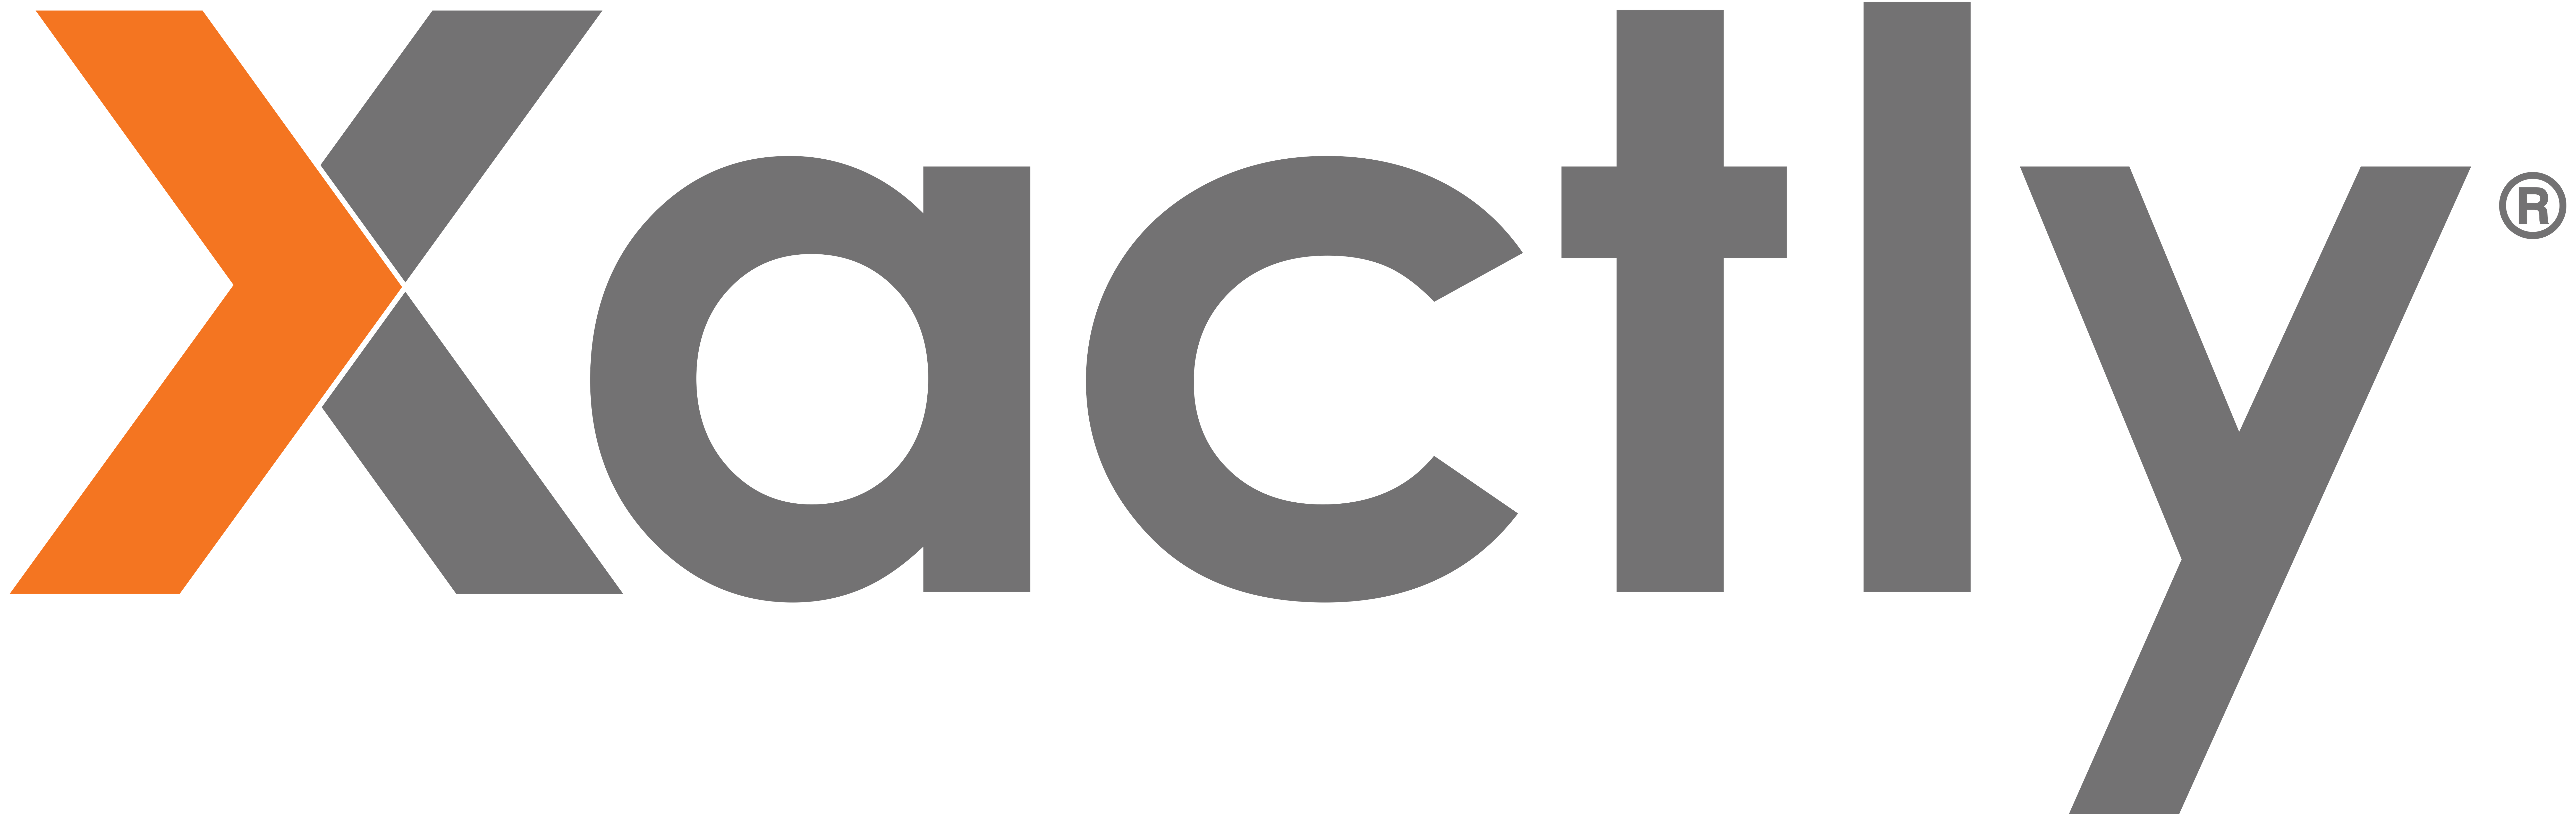 Xactly logo